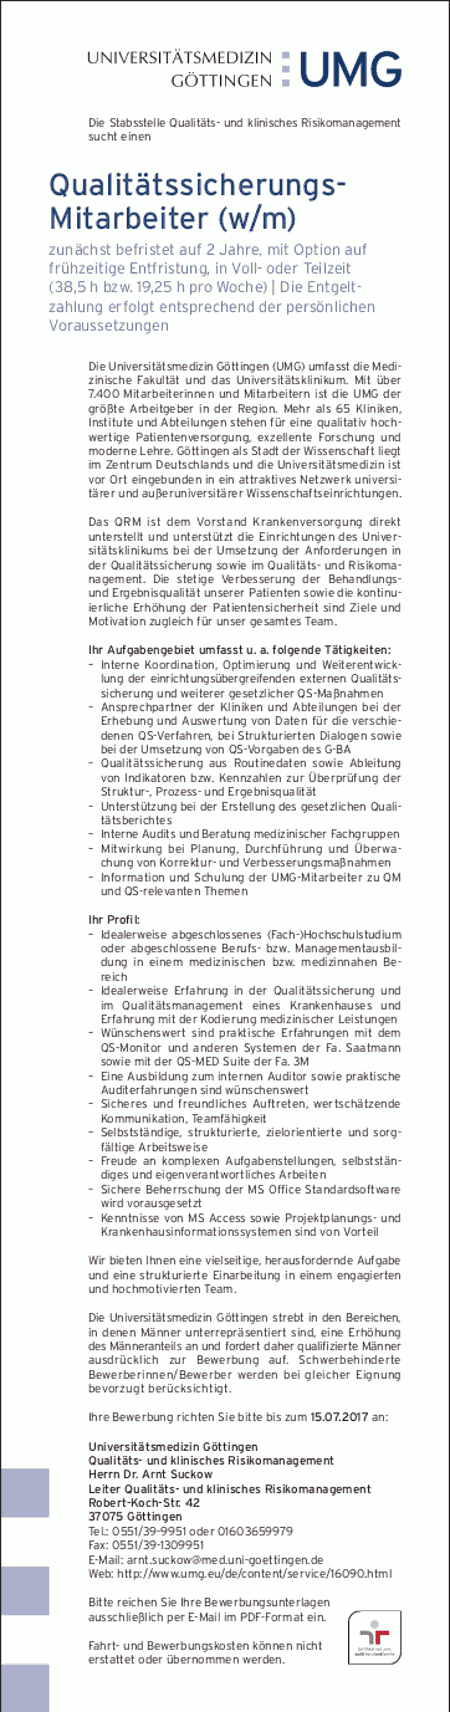 Universitätsmedizin Göttingen: Qualitätssicherungs-Mitarbeiter (w/m)